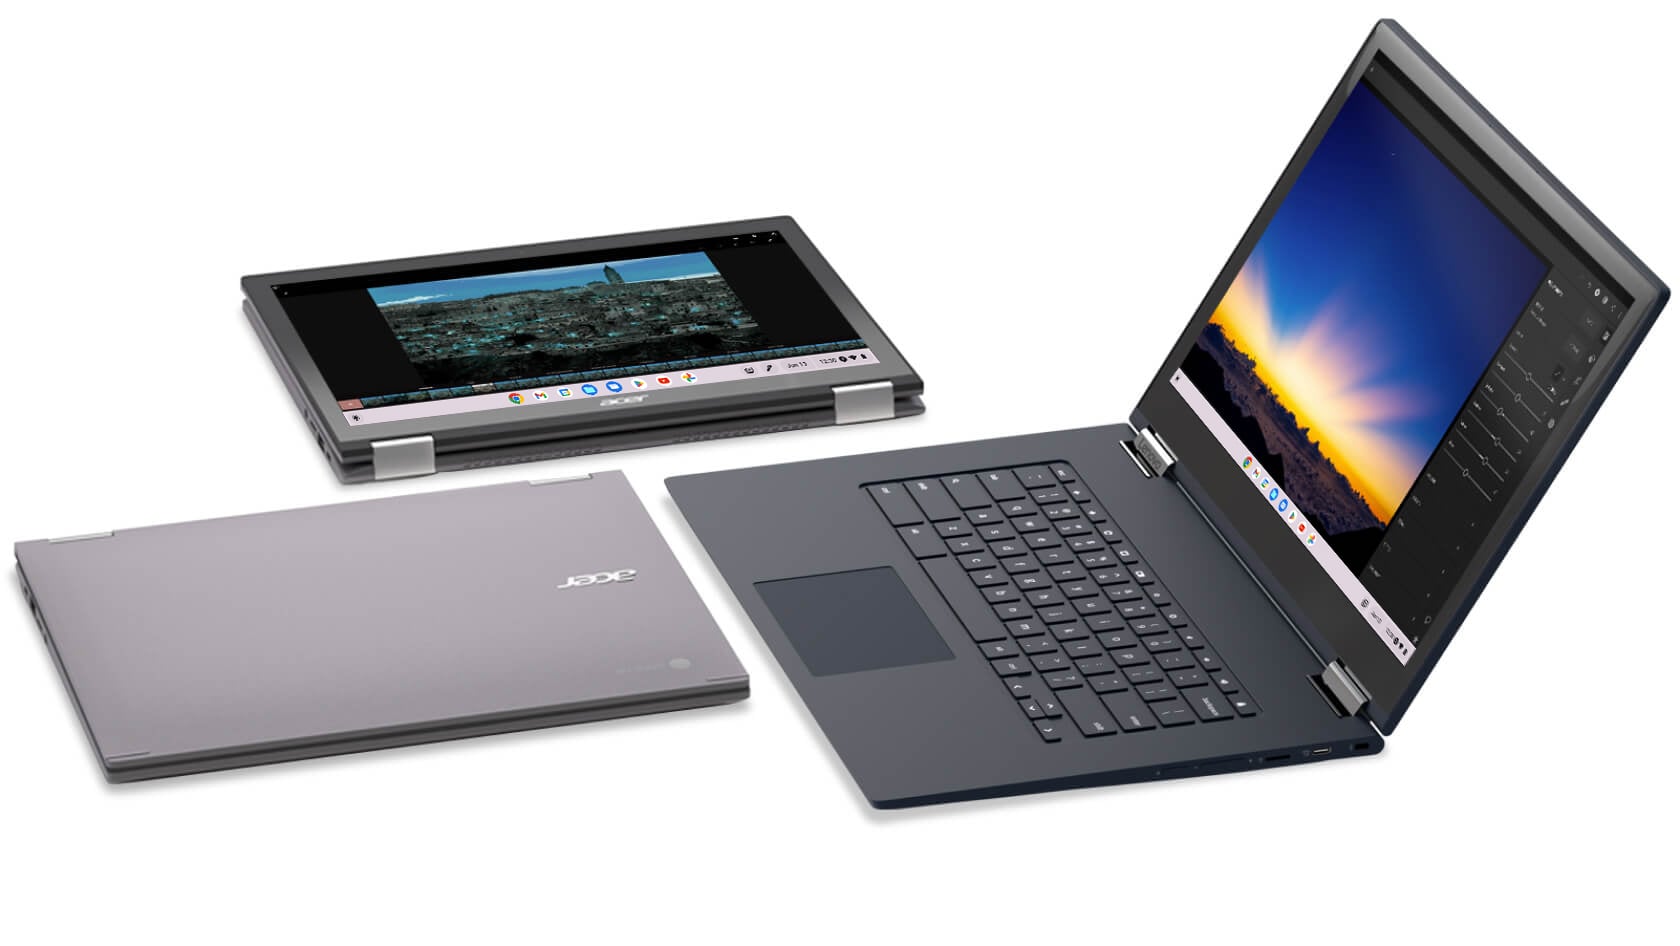 Immagine dall'alto delle tre diverse modalità di un Chromebook convertibile: chiuso, tablet e laptop.